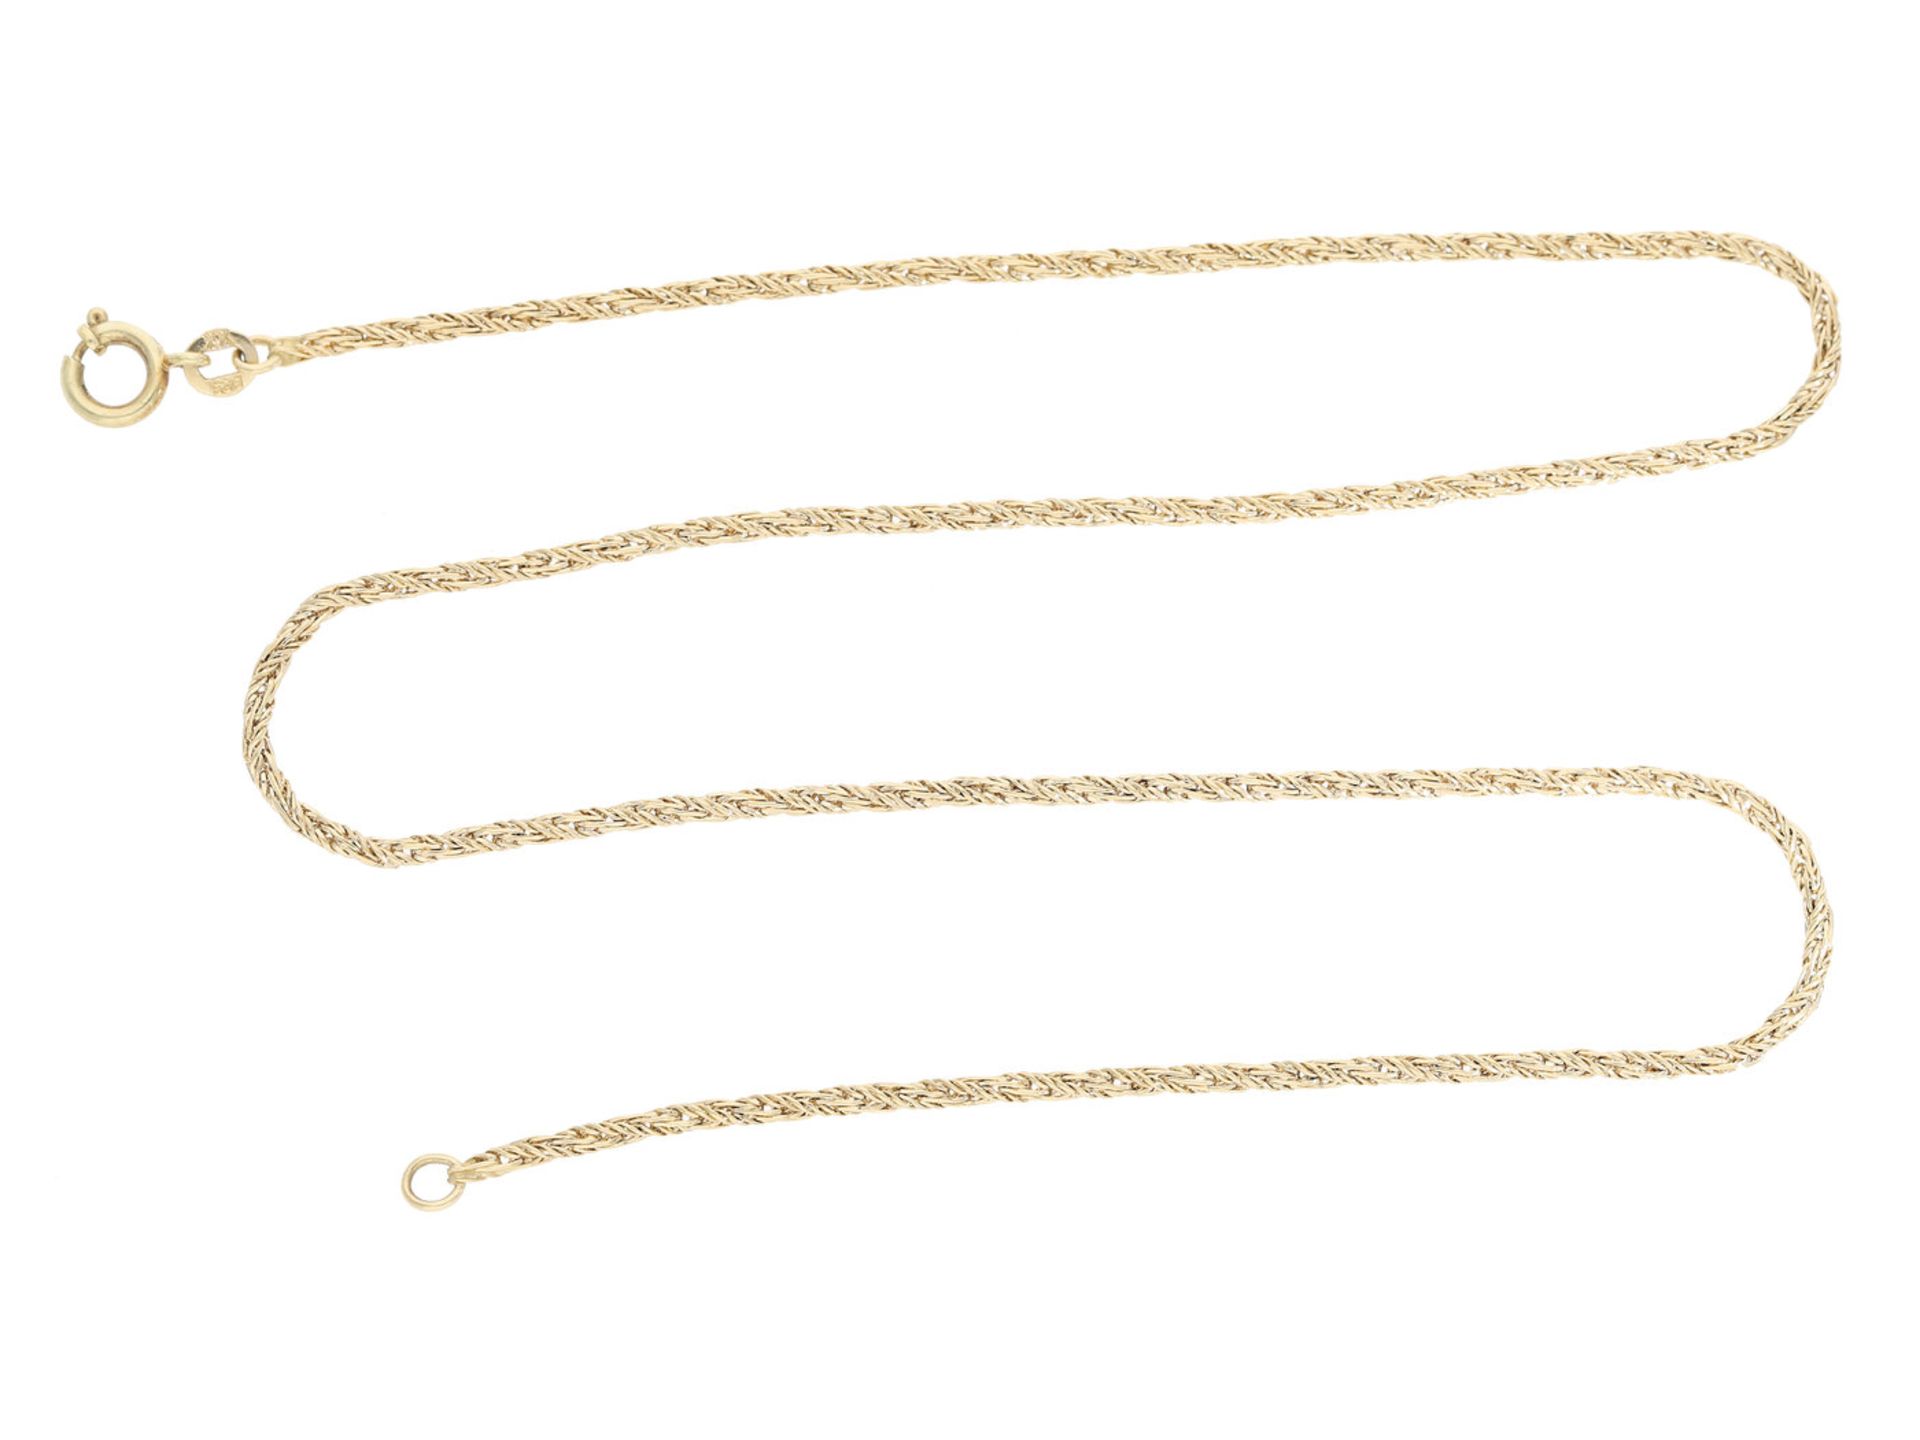 Kette/Collier: feine und ungetragene GoldketteCa. 42cm lang, ca. 6,6g, 14K Gelbgold, Federring,